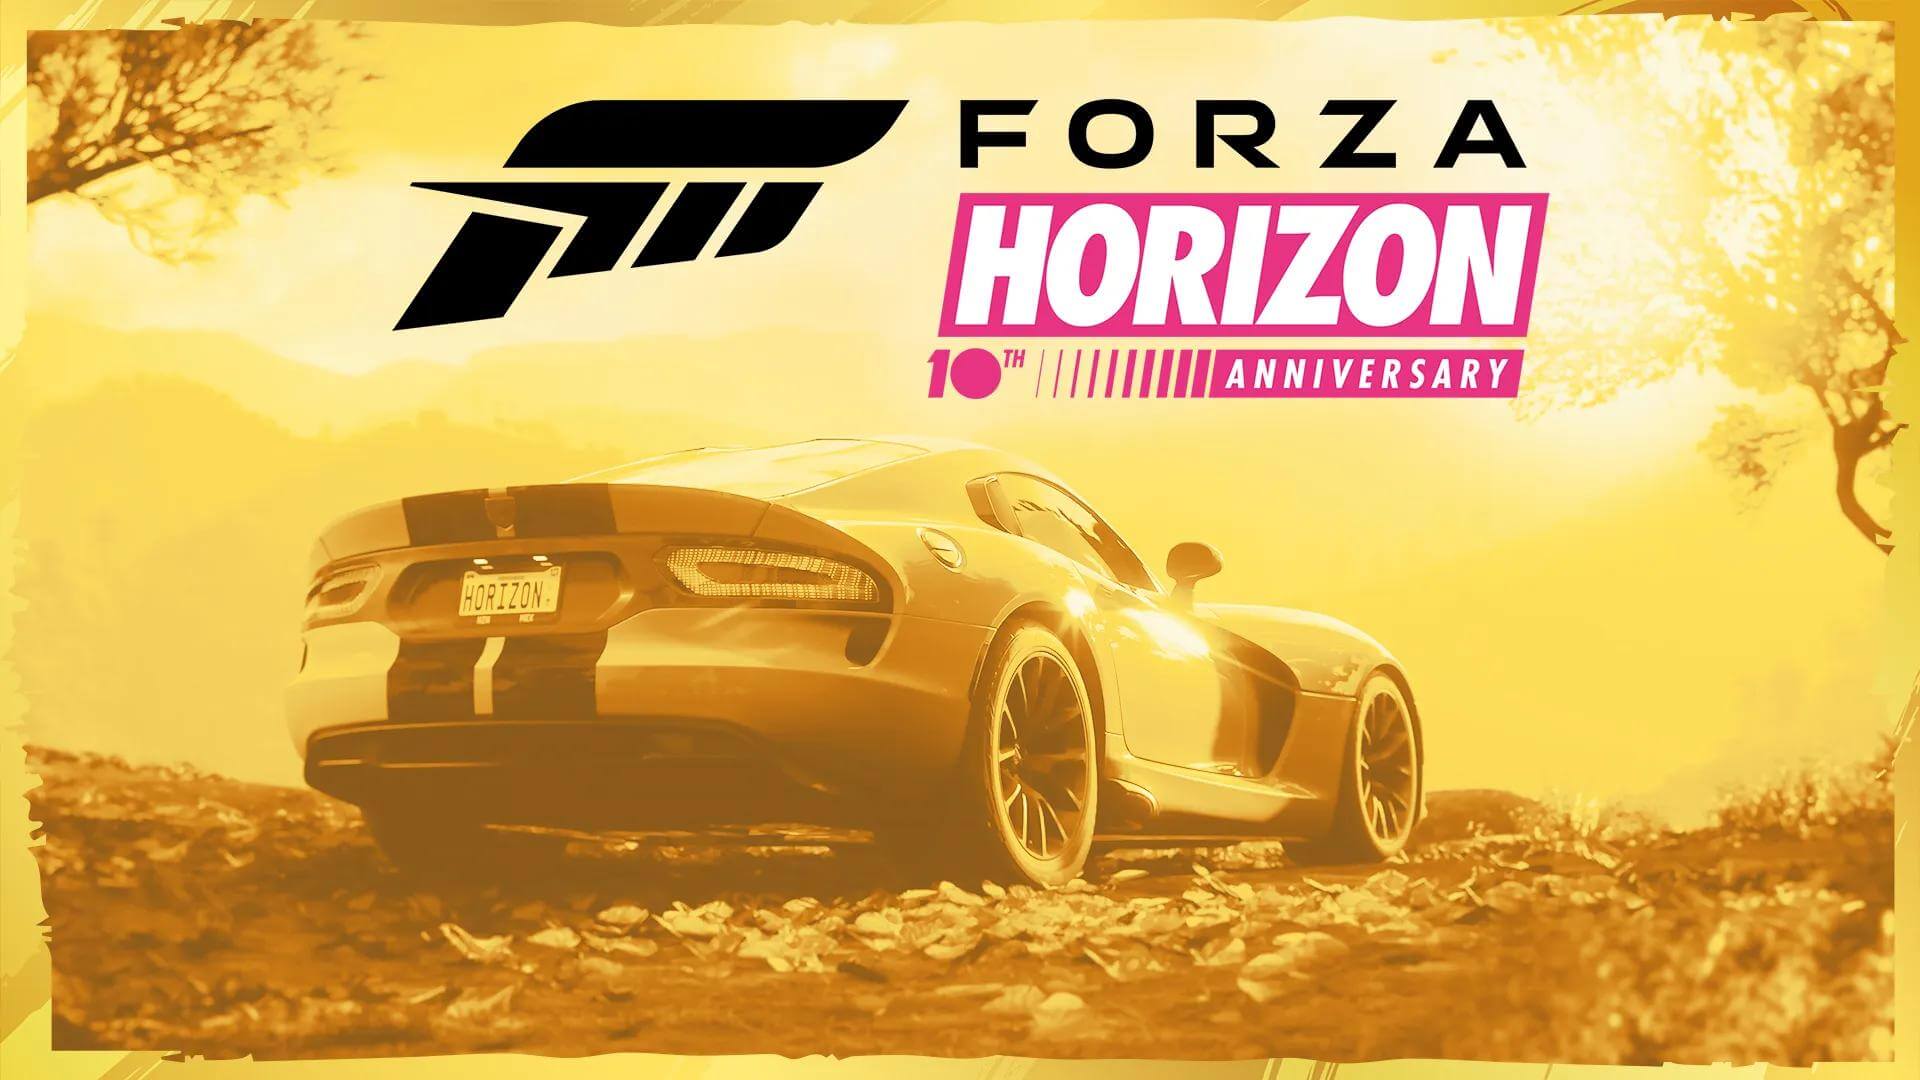 Авторы Forza Horizon напомнили о 10-летней истории развития франшизы